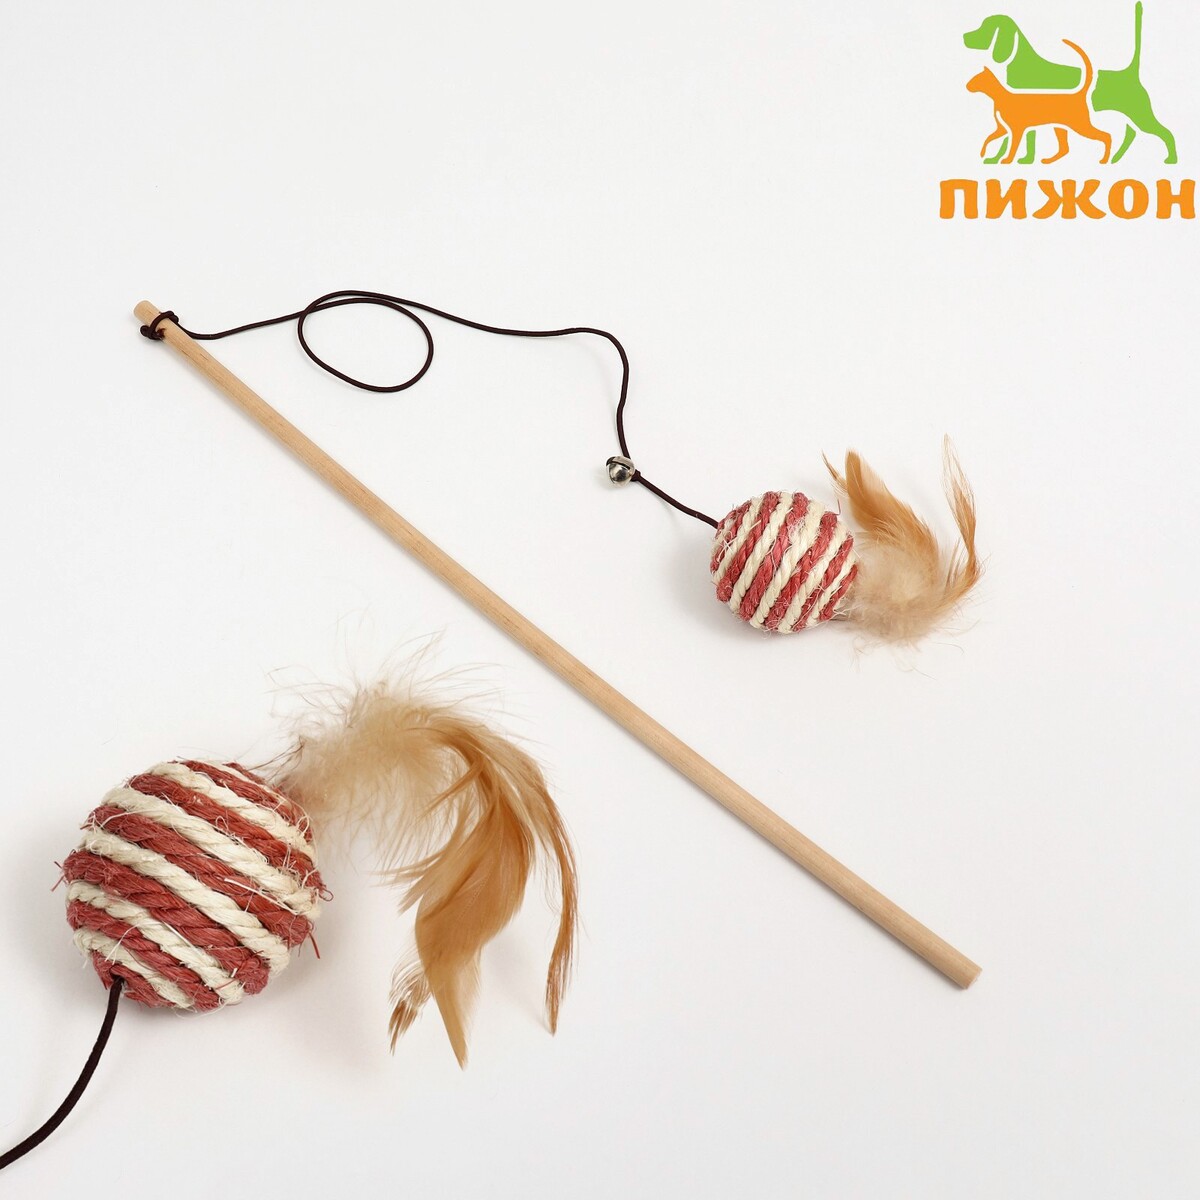 Дразнилка-удочка игра поймай ка рыбки удочка с крючком деревянные игрушки владимир